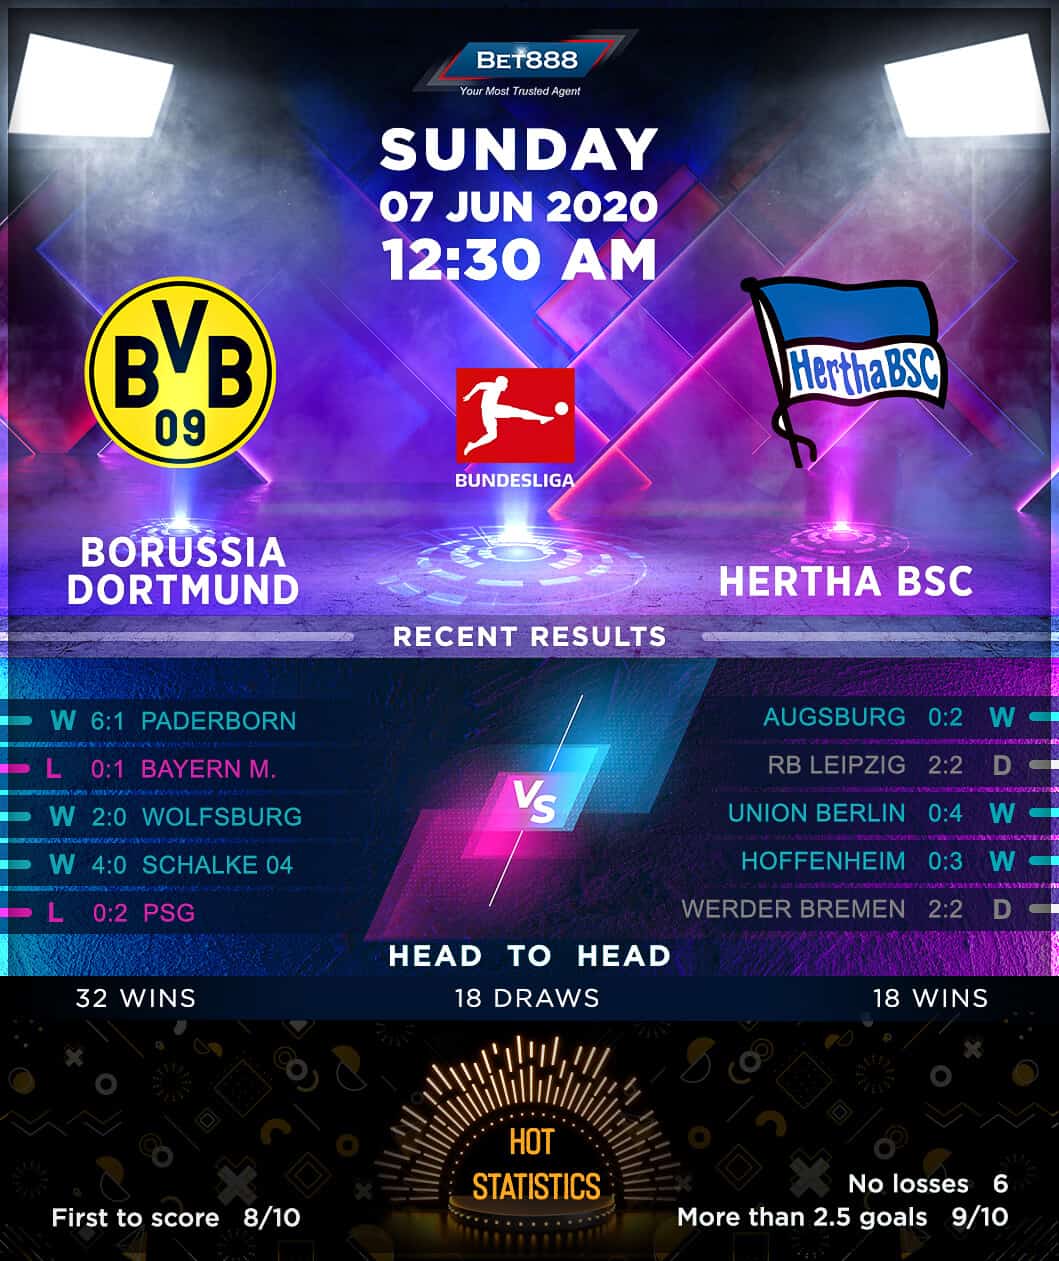 Borussia Dortmund vs Hertha BSC 07/06/20